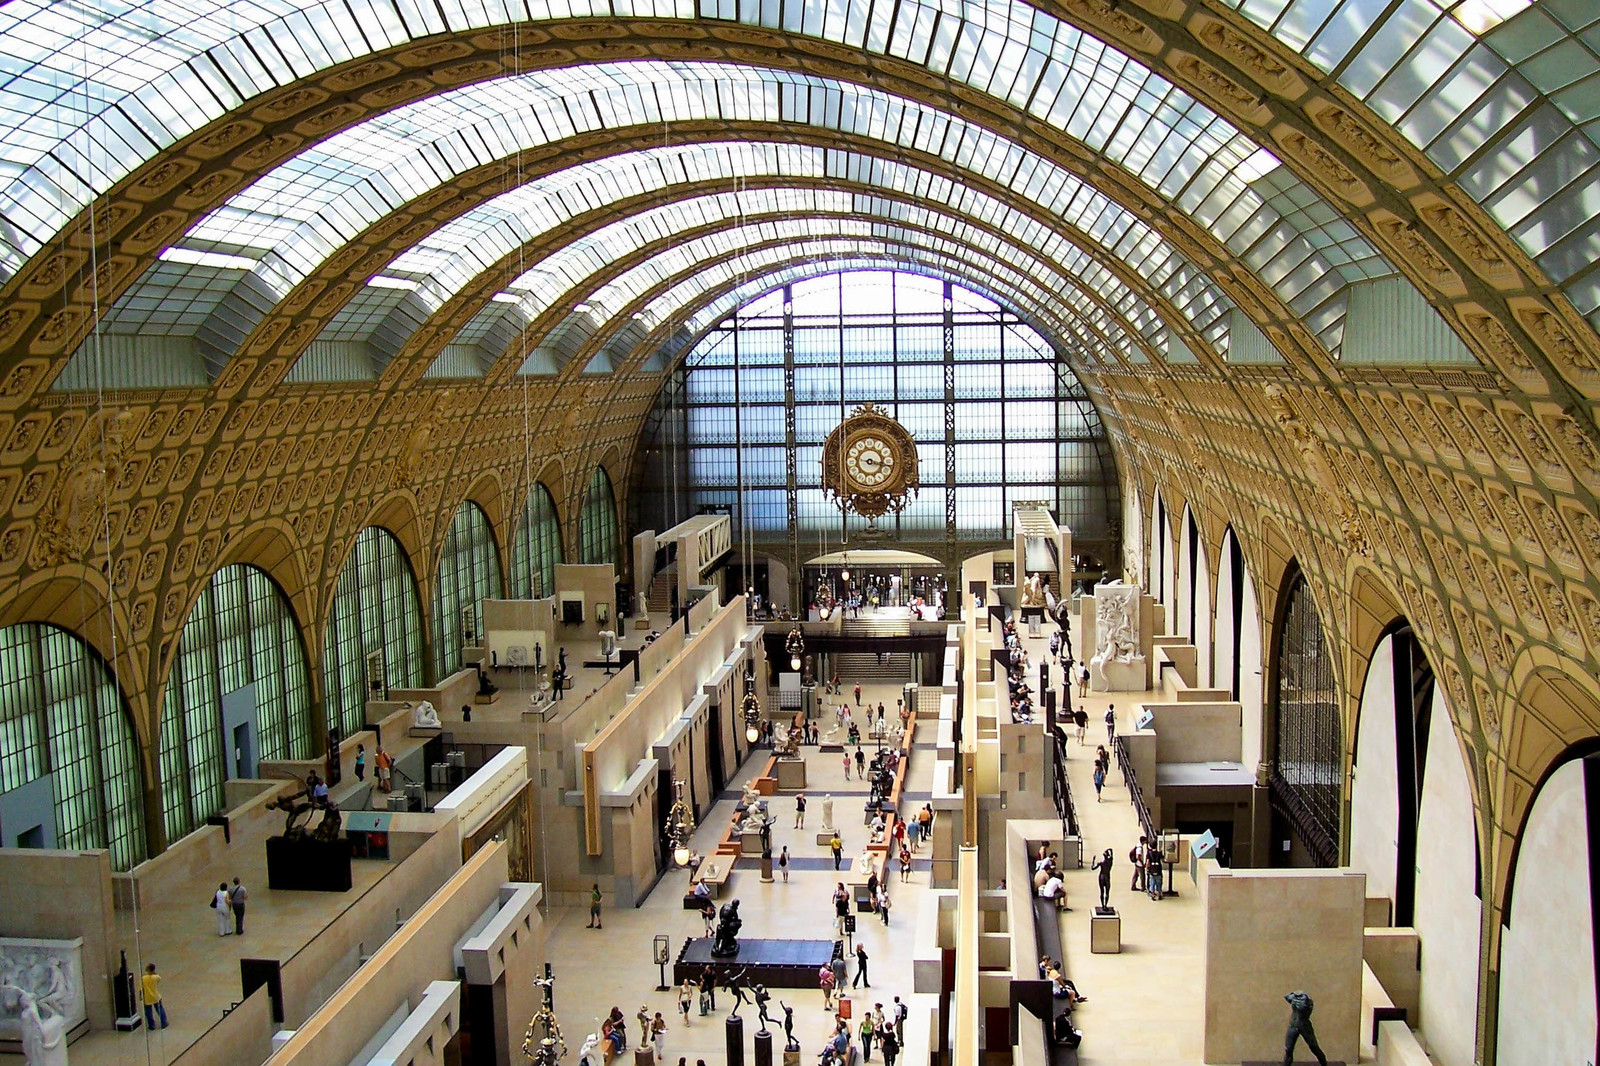 متحف دورسيه من أشهر مقاصد السياحة في باريس